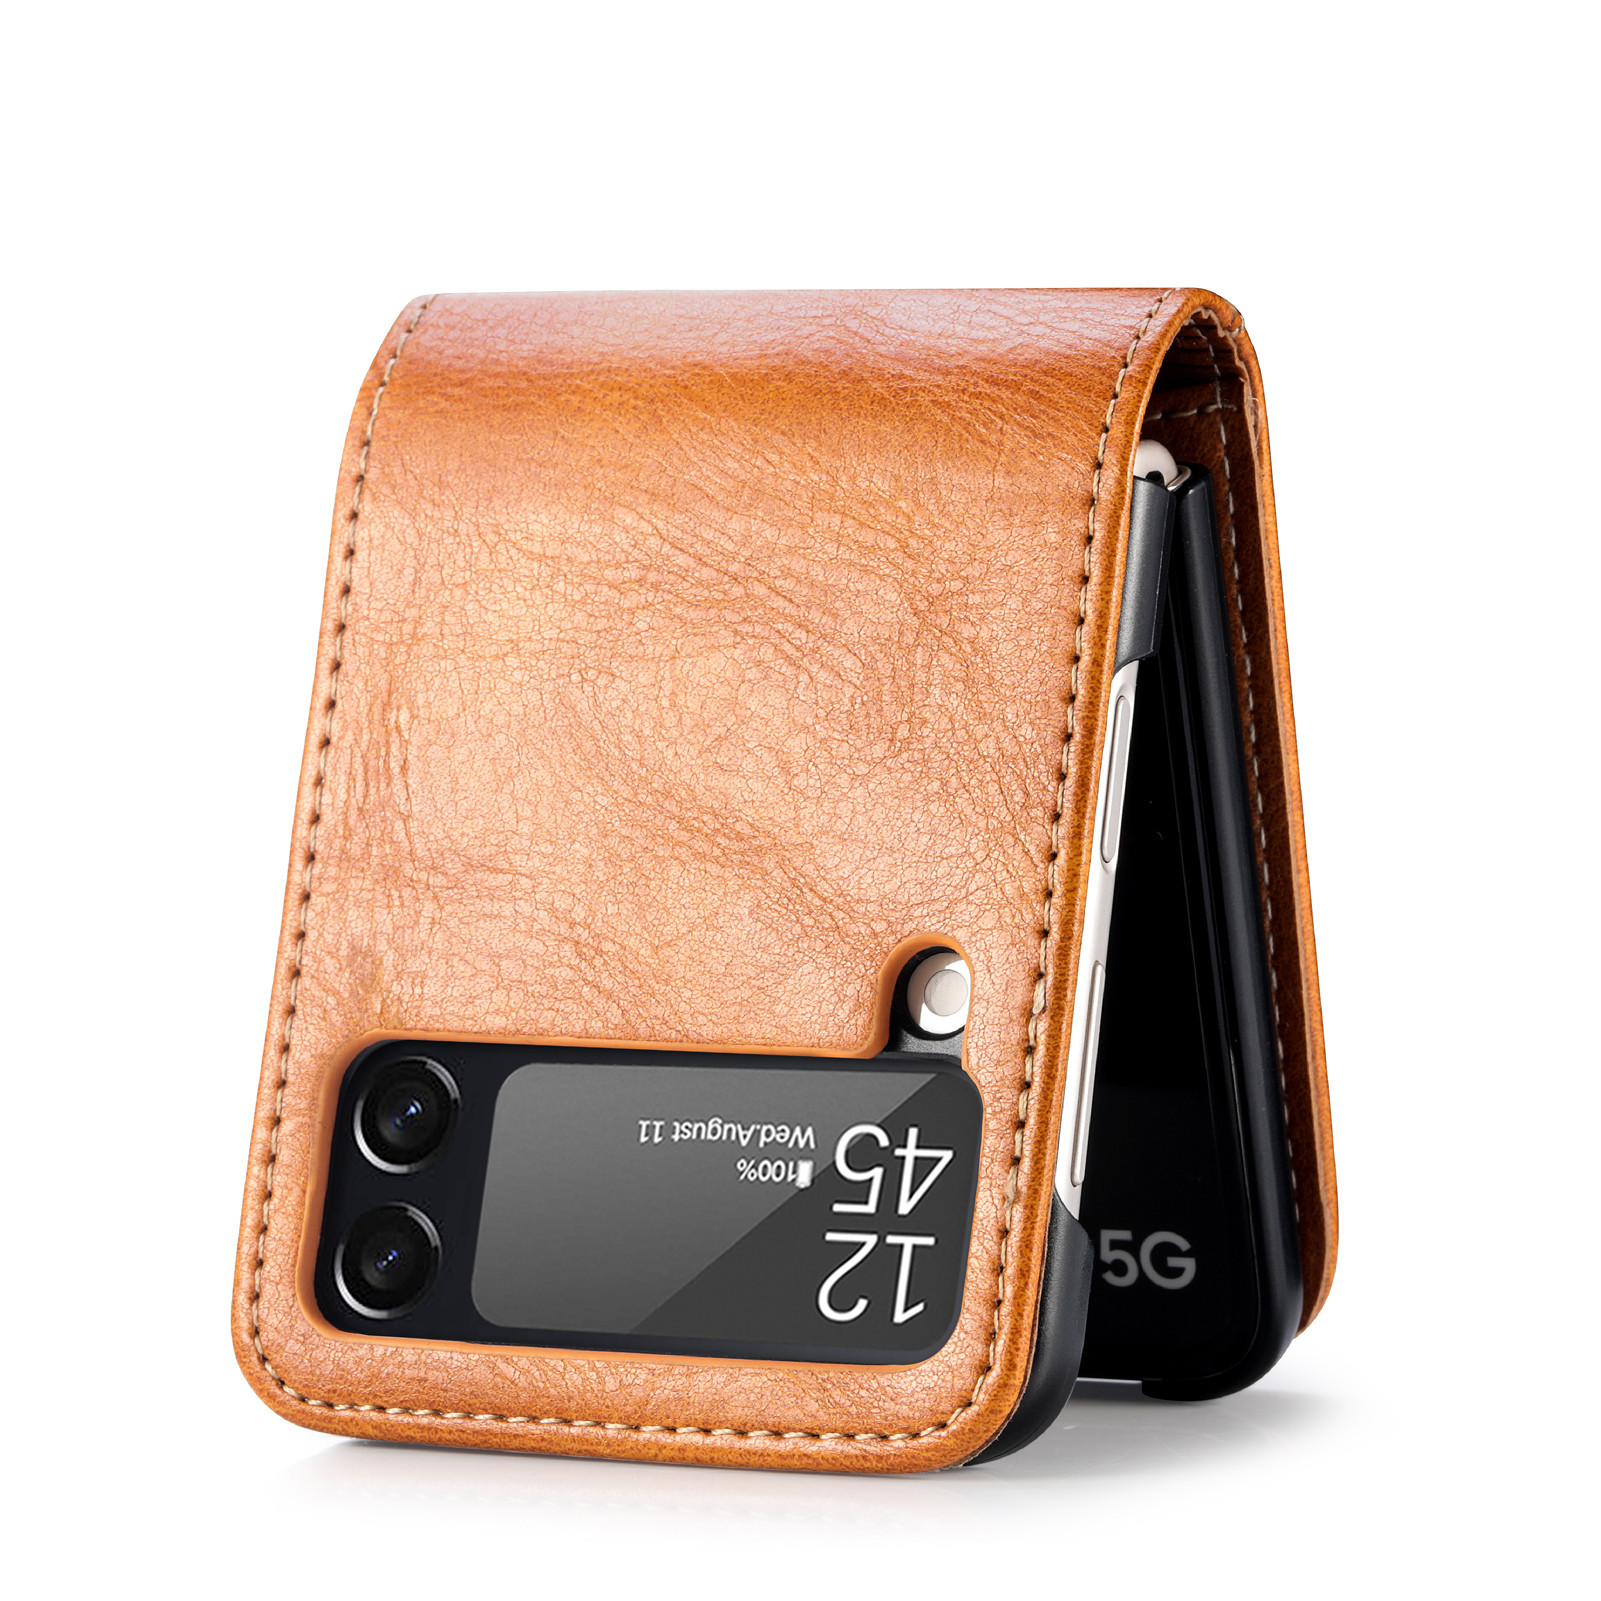 Carteiras de designer de moda Casos de couro para Samsung Galaxy Z Flip1 2 3 4 5g Cartão de PC em relevo e portador de caneta Pocket Pocket Luxury Anti-sísmico Antidrop Cellphone Tampa